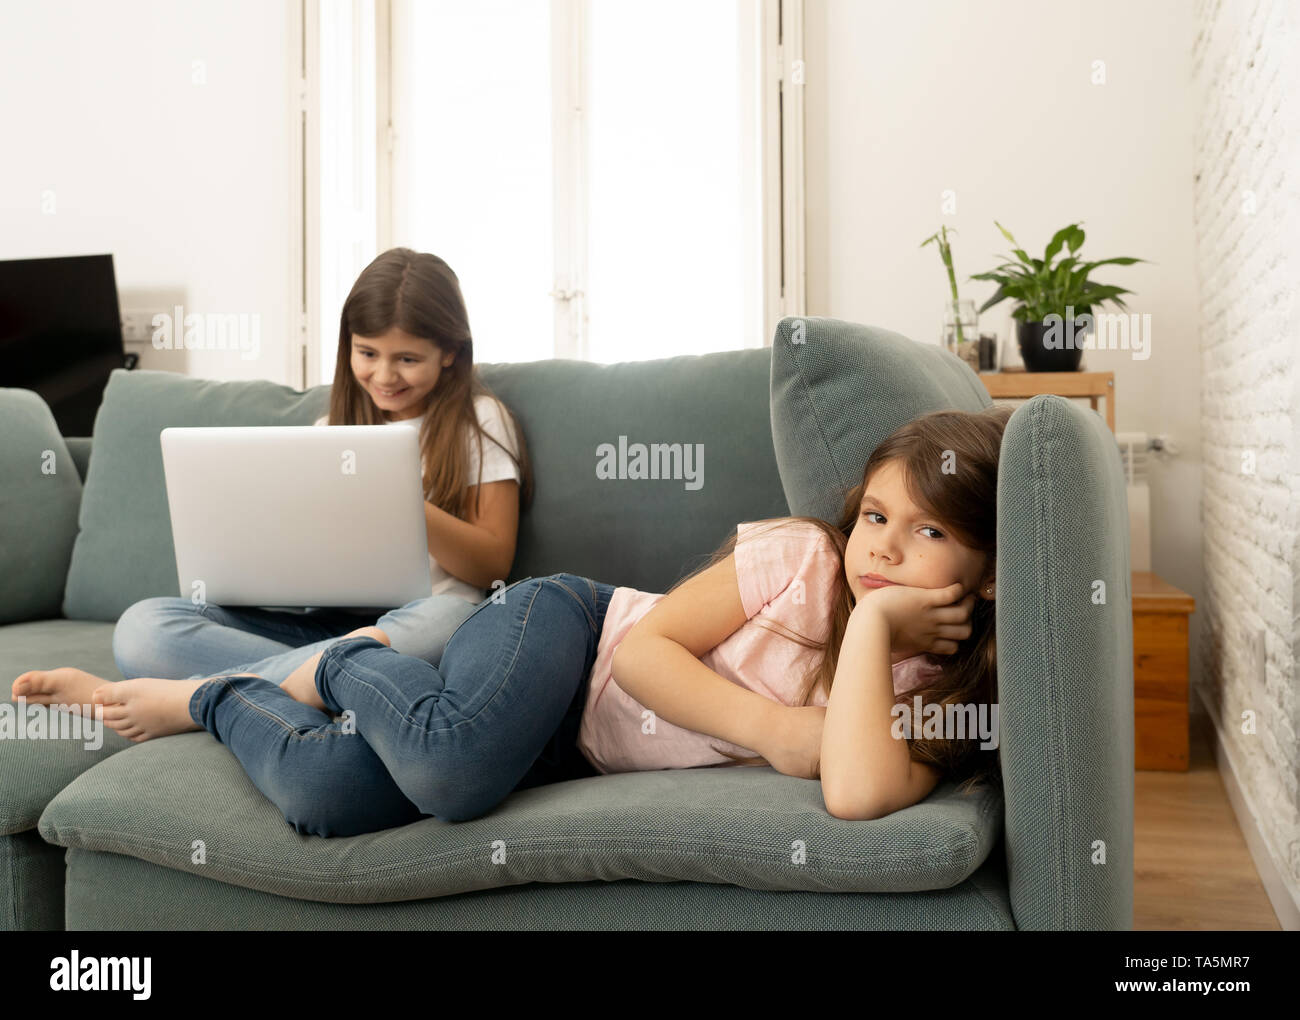 La technologie numérique addicted jeune fille jouant sur internet à l'aide d'ordinateur portable l'ignorant triste petite sœur. Petite fille se sentir abandonné et malheureux Banque D'Images